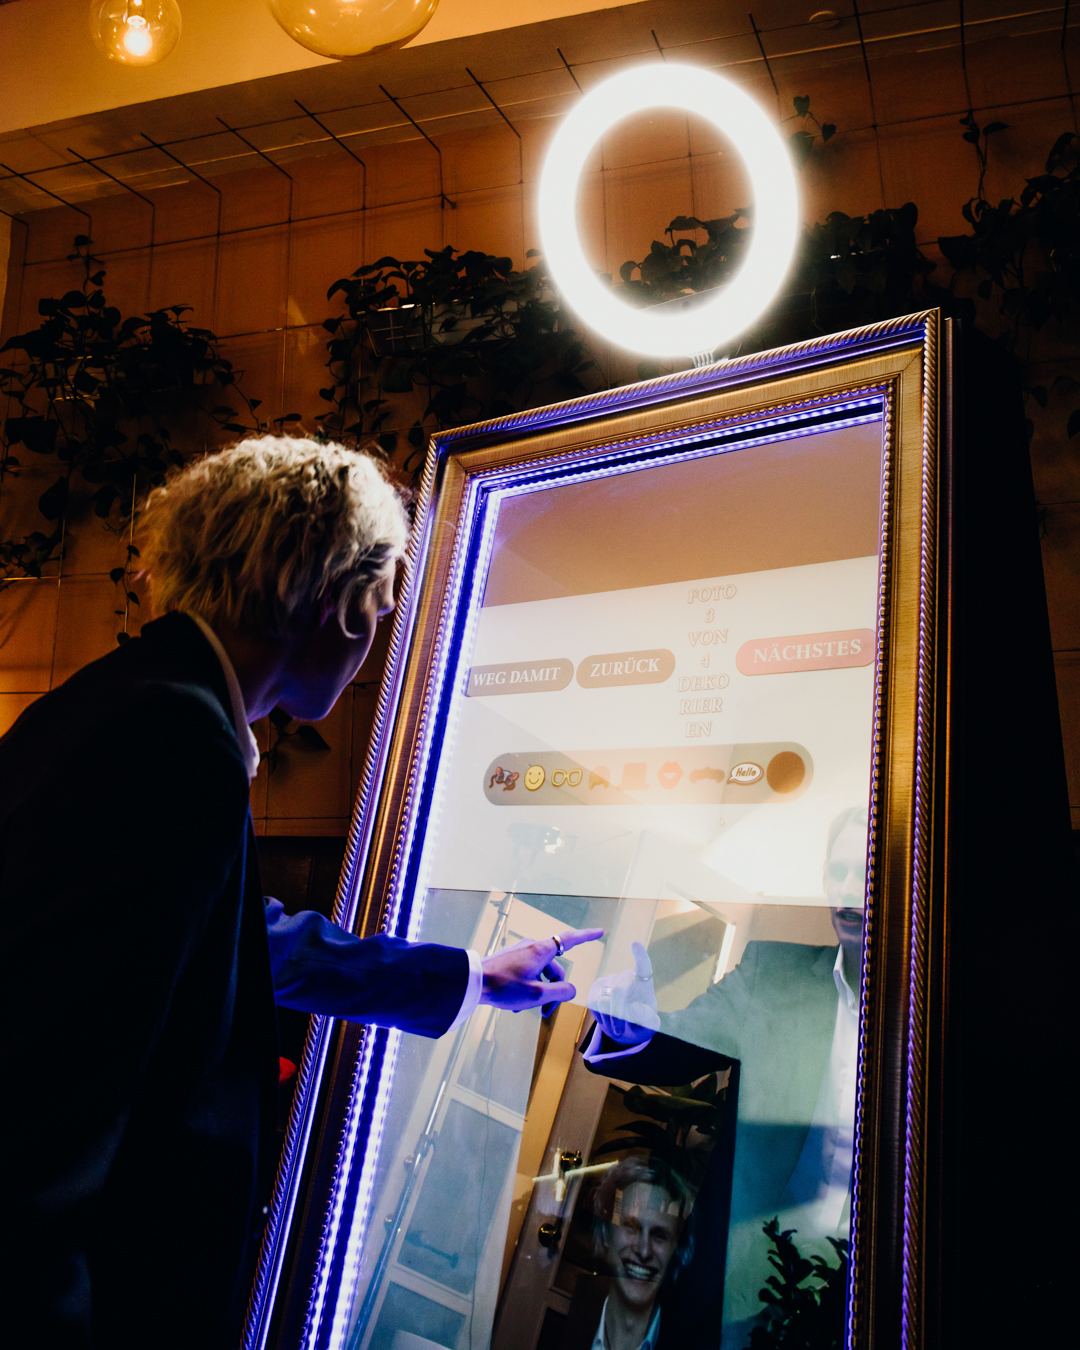 Eine Person nutzt den interaktiven Fotospiegel (Fotobox) von Glüx, umgeben von stimmungsvoller Beleuchtung und stilvoller Dekoration in einer Event-Lokalität in Bayreuth.